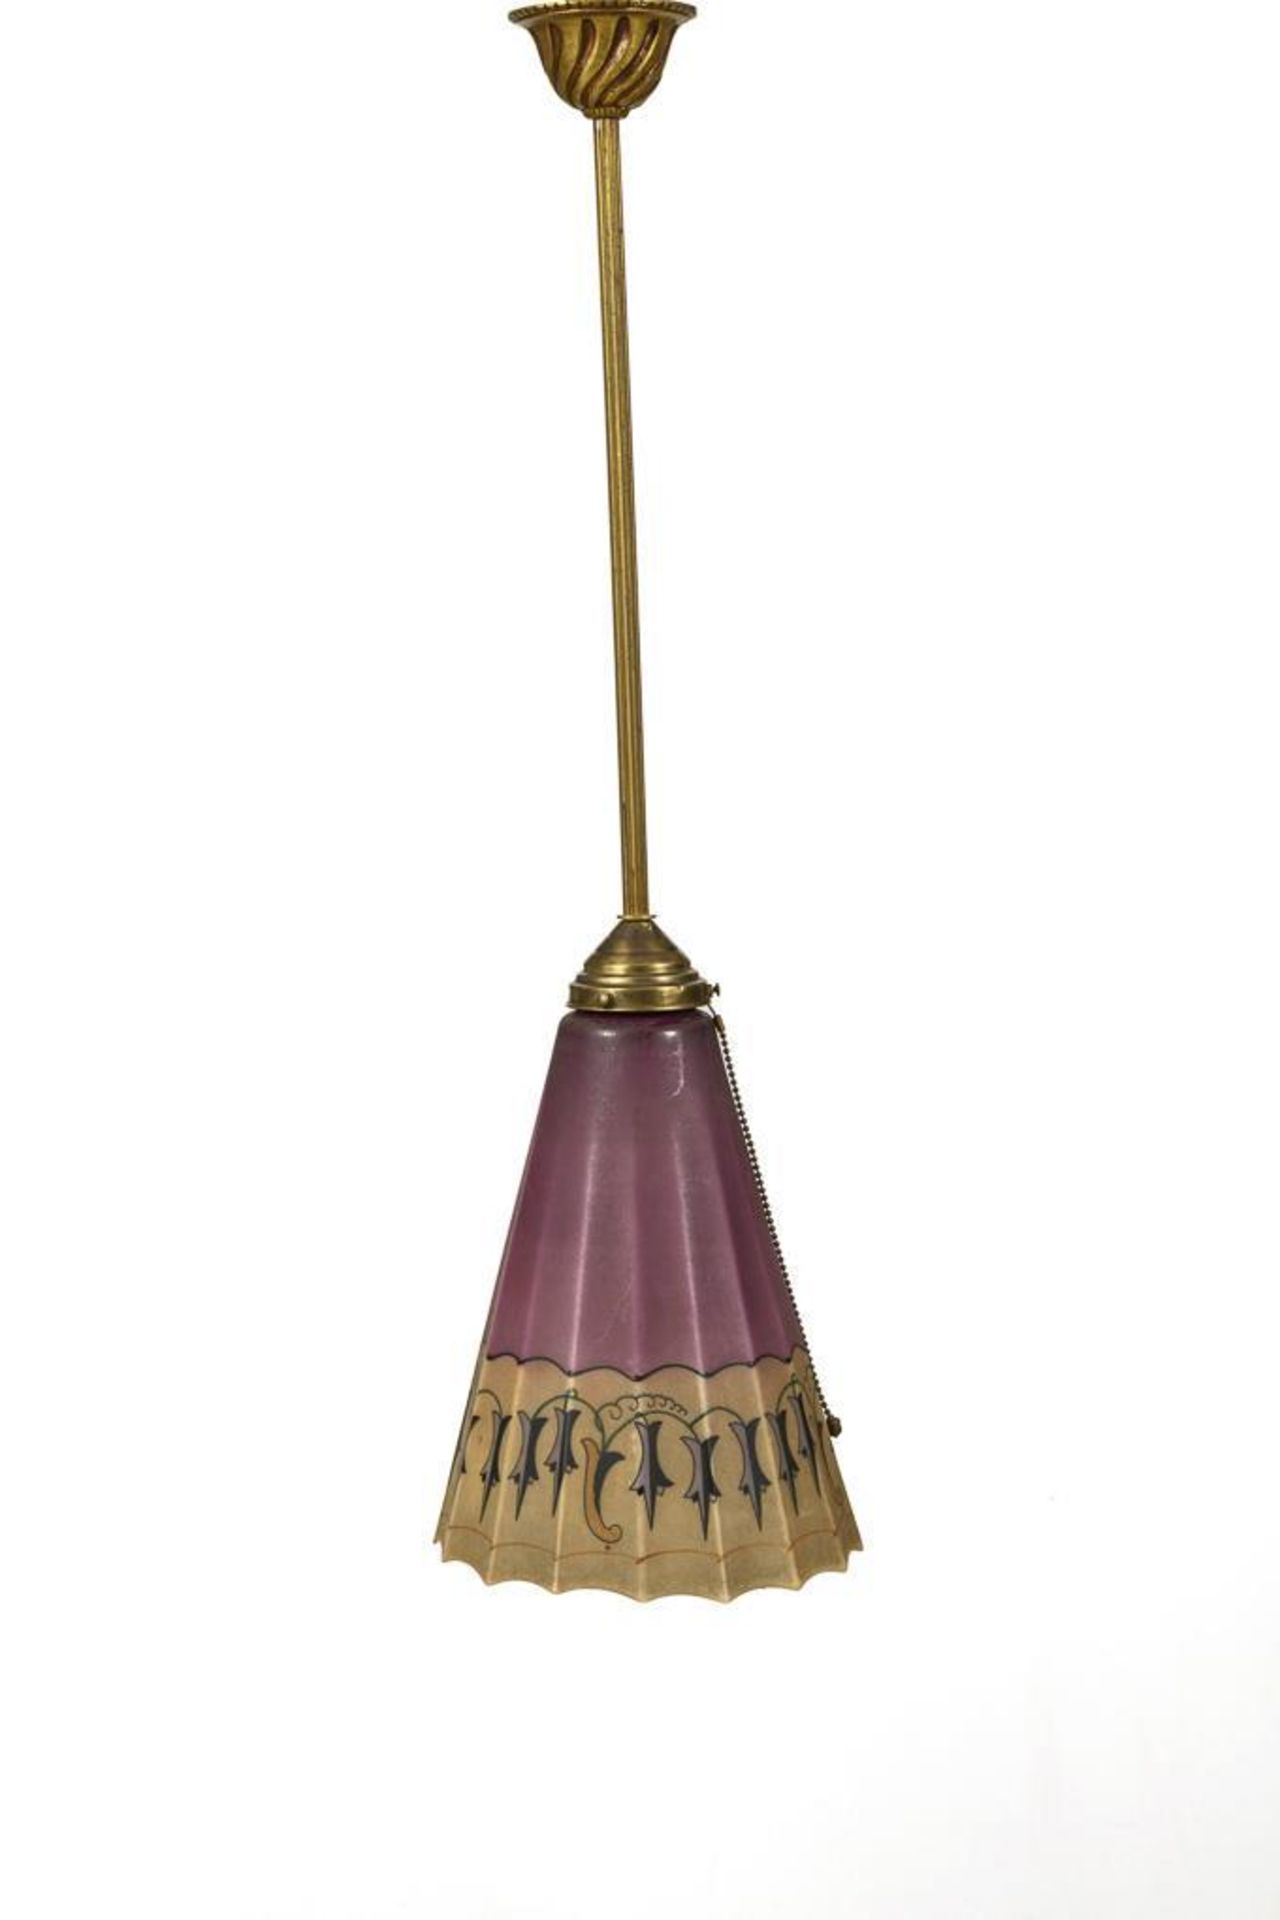 Deckenlampe mit Glasschirm im Wiener Jugendstil.